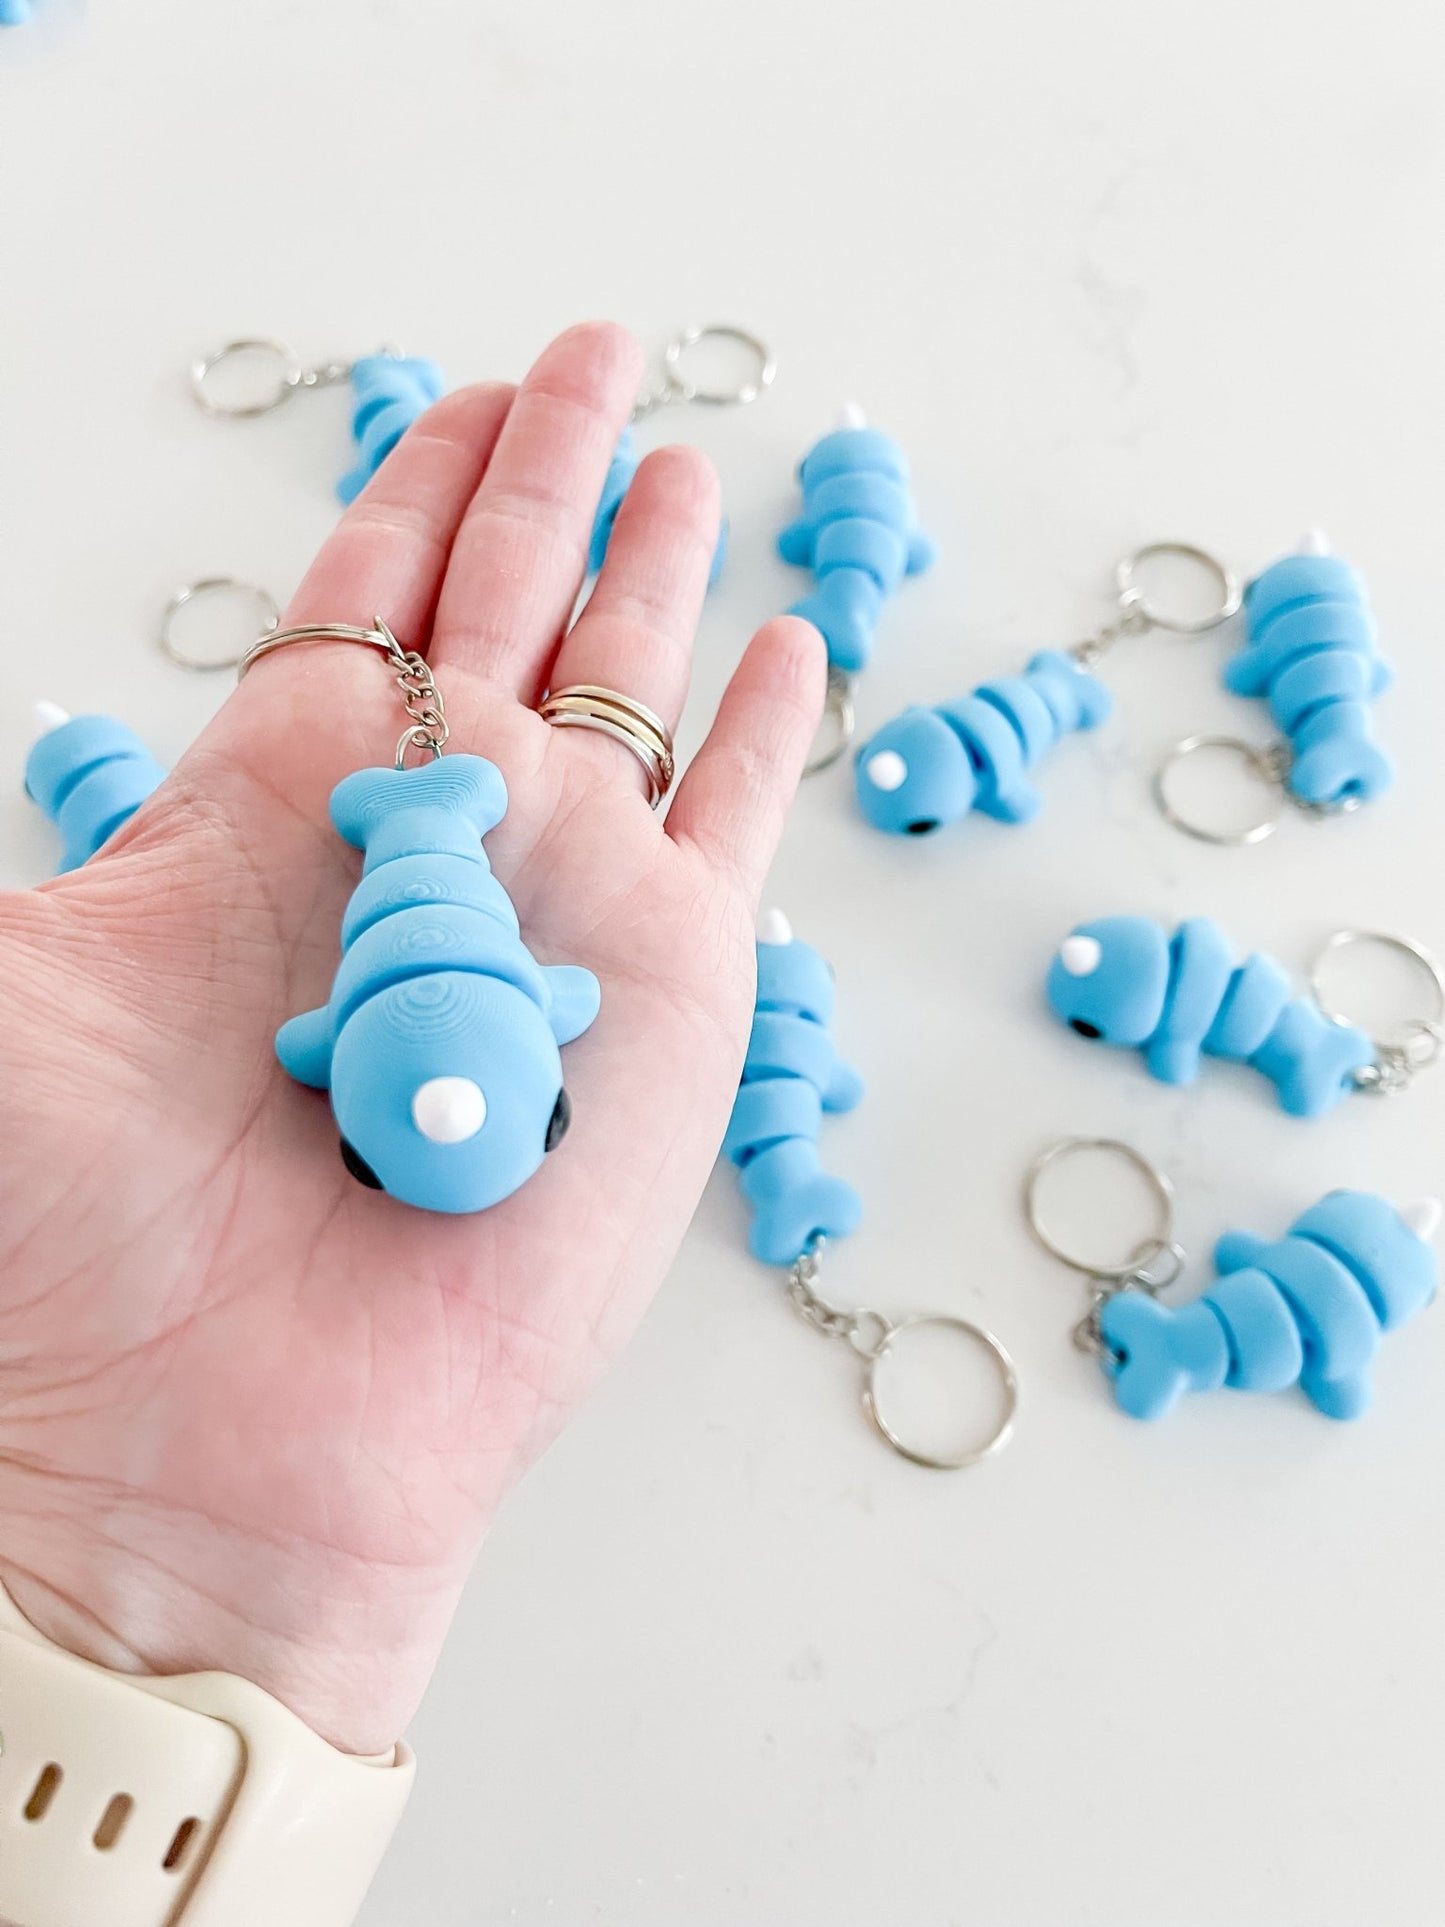 Baby Narwhal Keychain - Designs by Lauren Ann